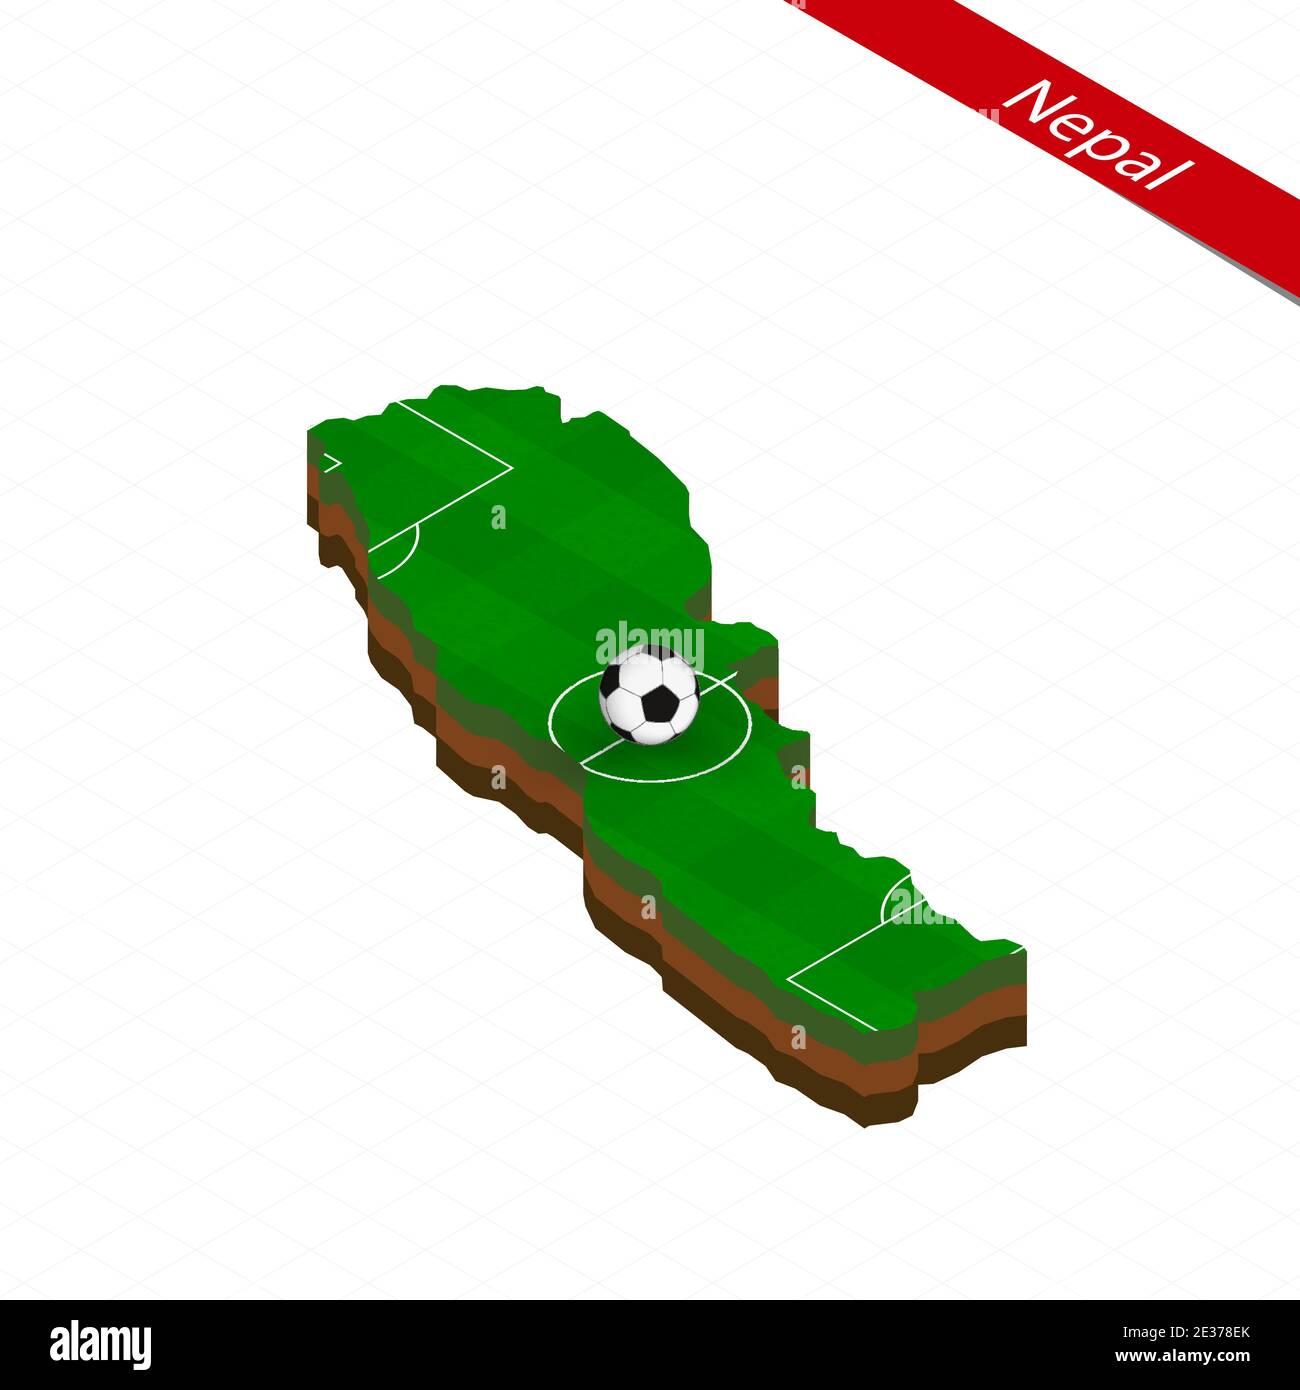 Isometrische Karte von Nepal mit Fußballplatz. Fußball in der Mitte des Fußballplatzes. Vektorgrafik Fußball. Stock Vektor